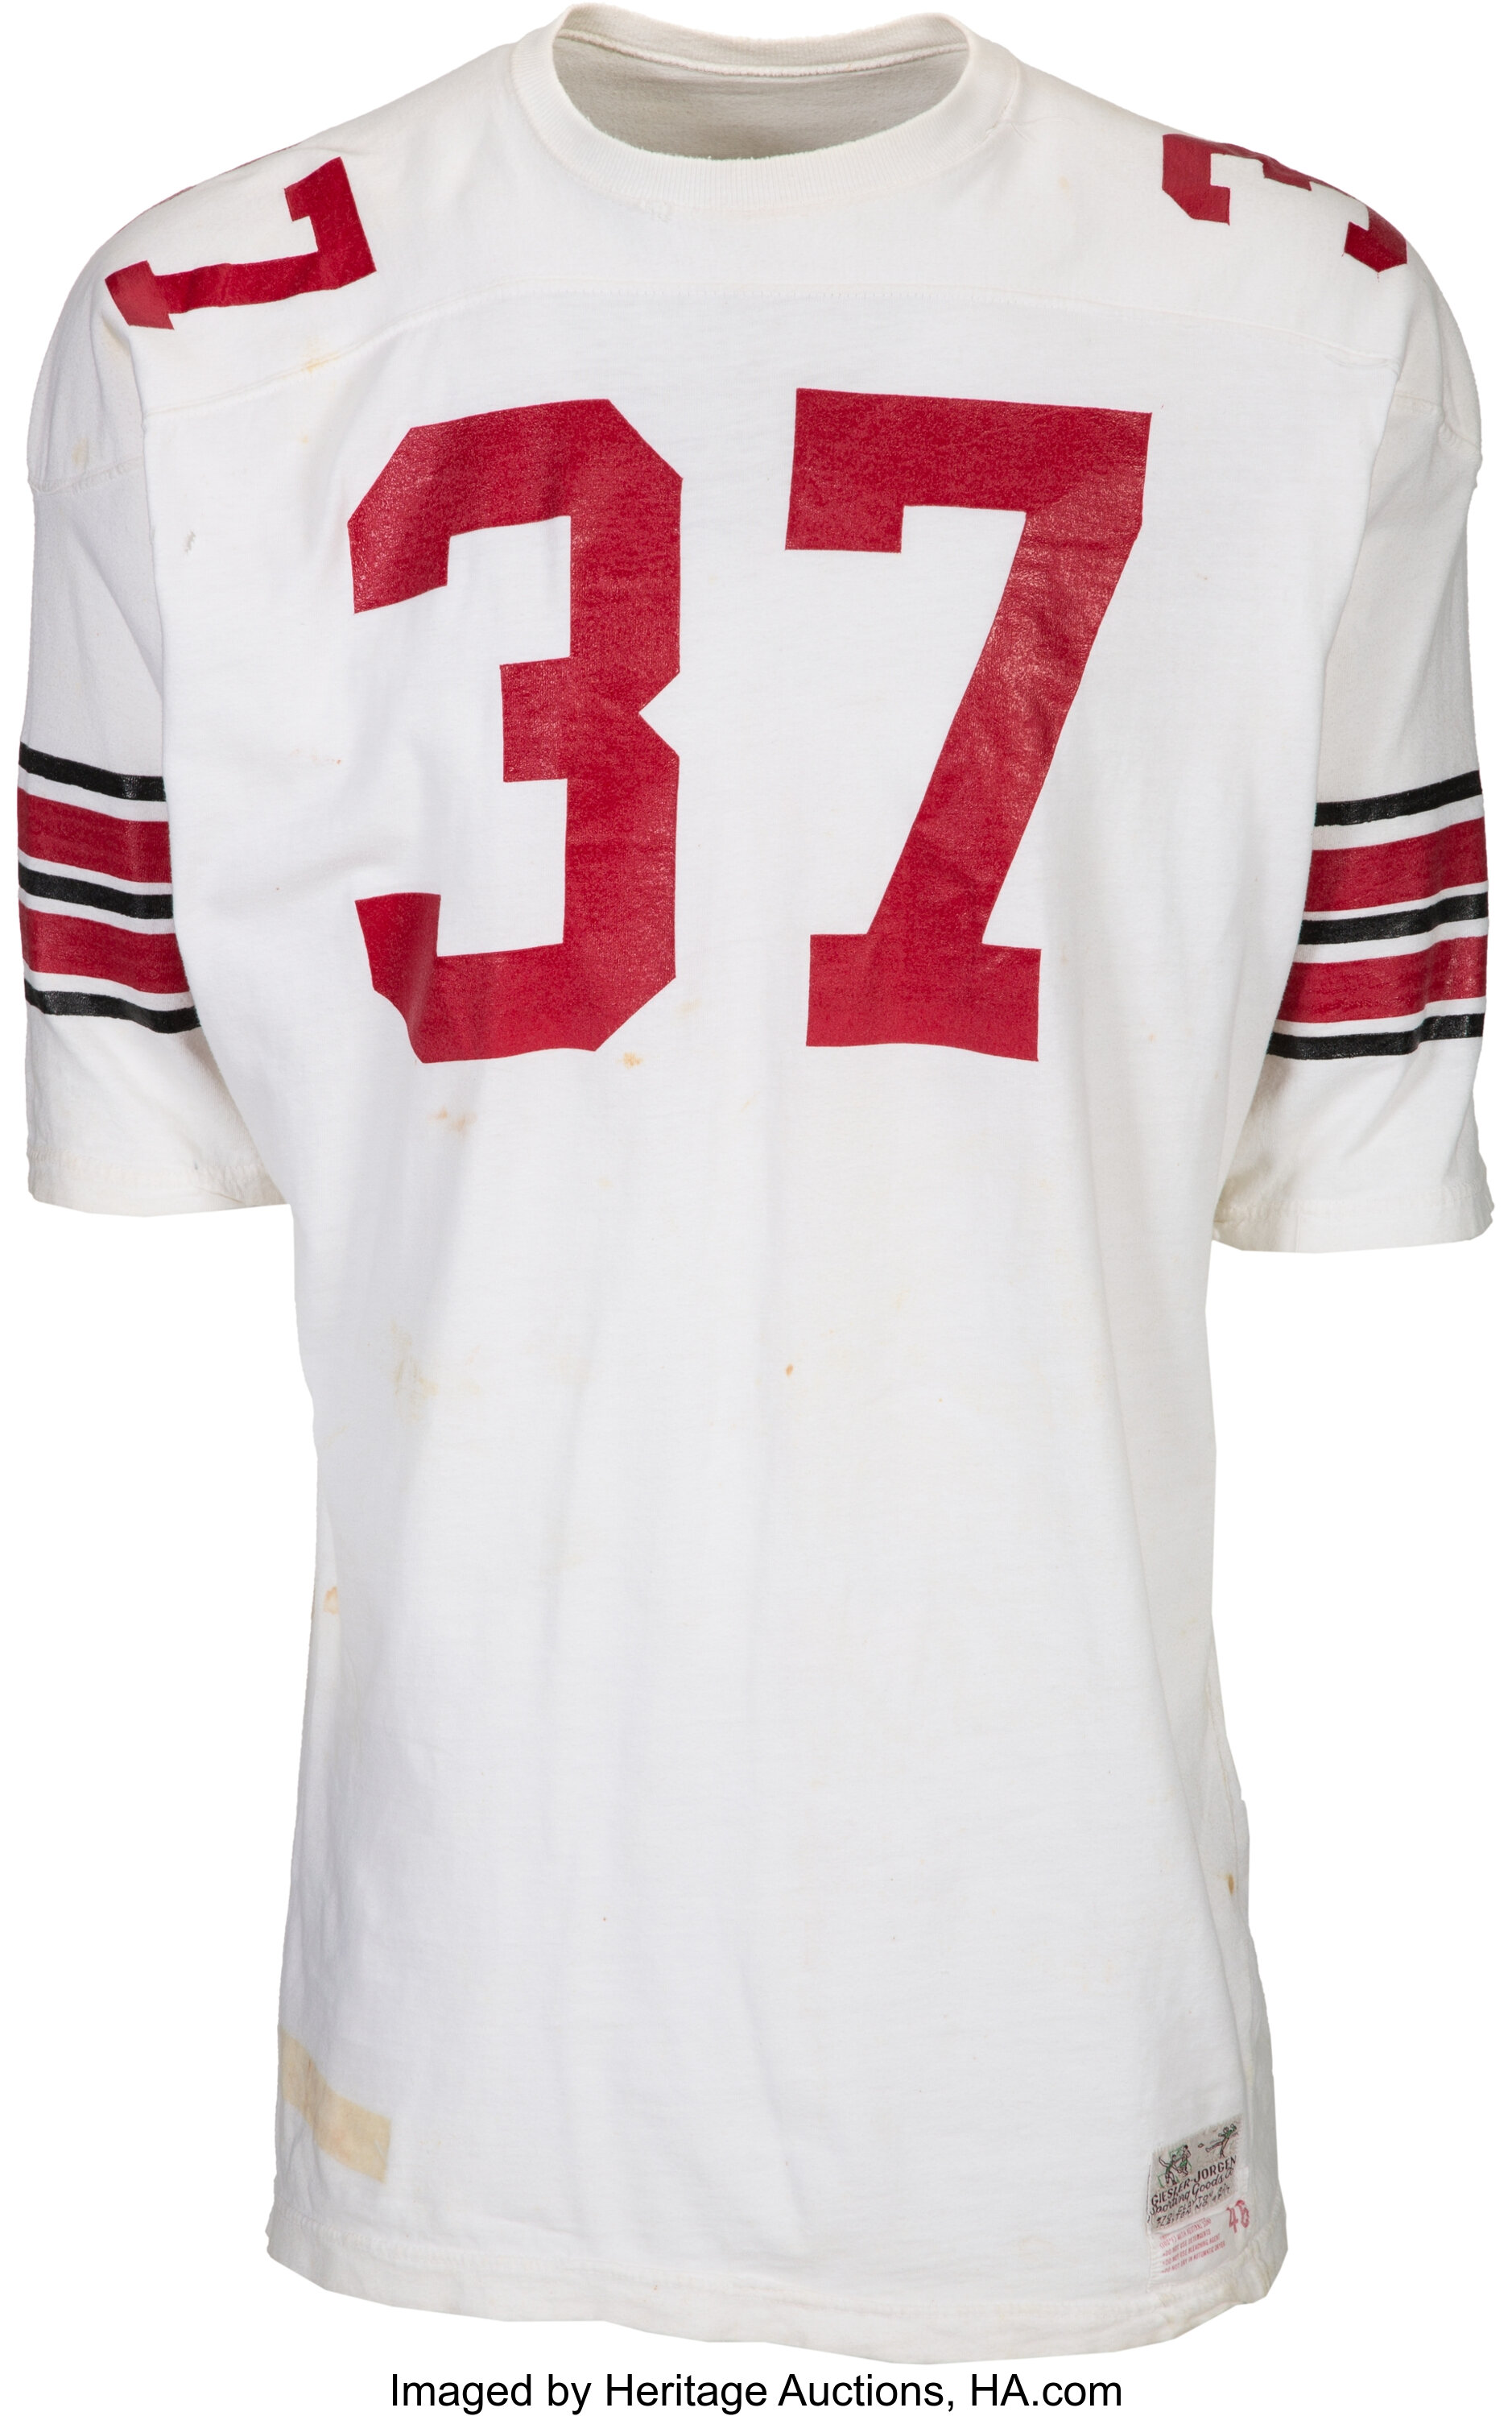 1966-67 Pat Fischer Game Worn St. Louis Cardinals Jersey., Lot #82232